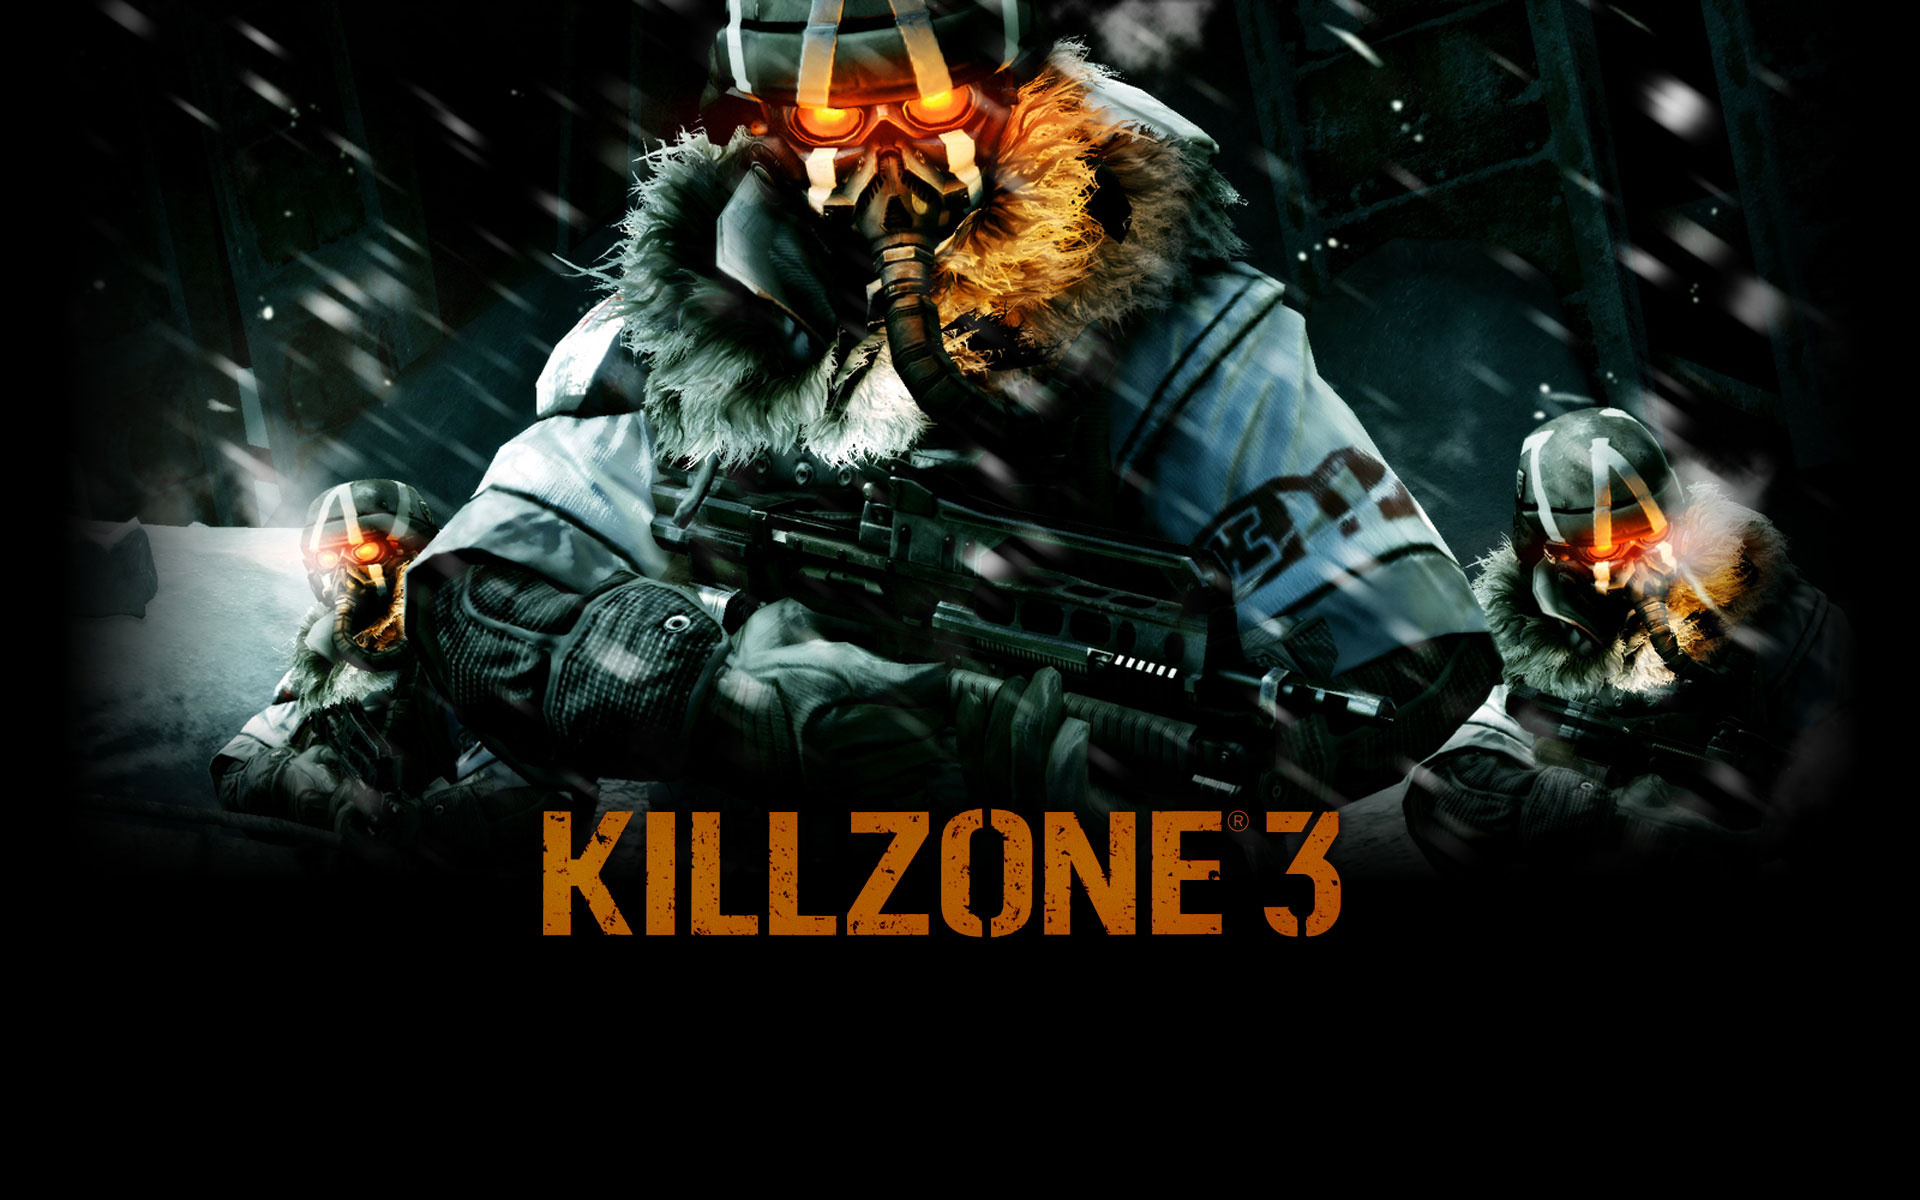 Free download, Killzone wallpaper, Desktop, Mobile, 1920x1200 HD Desktop